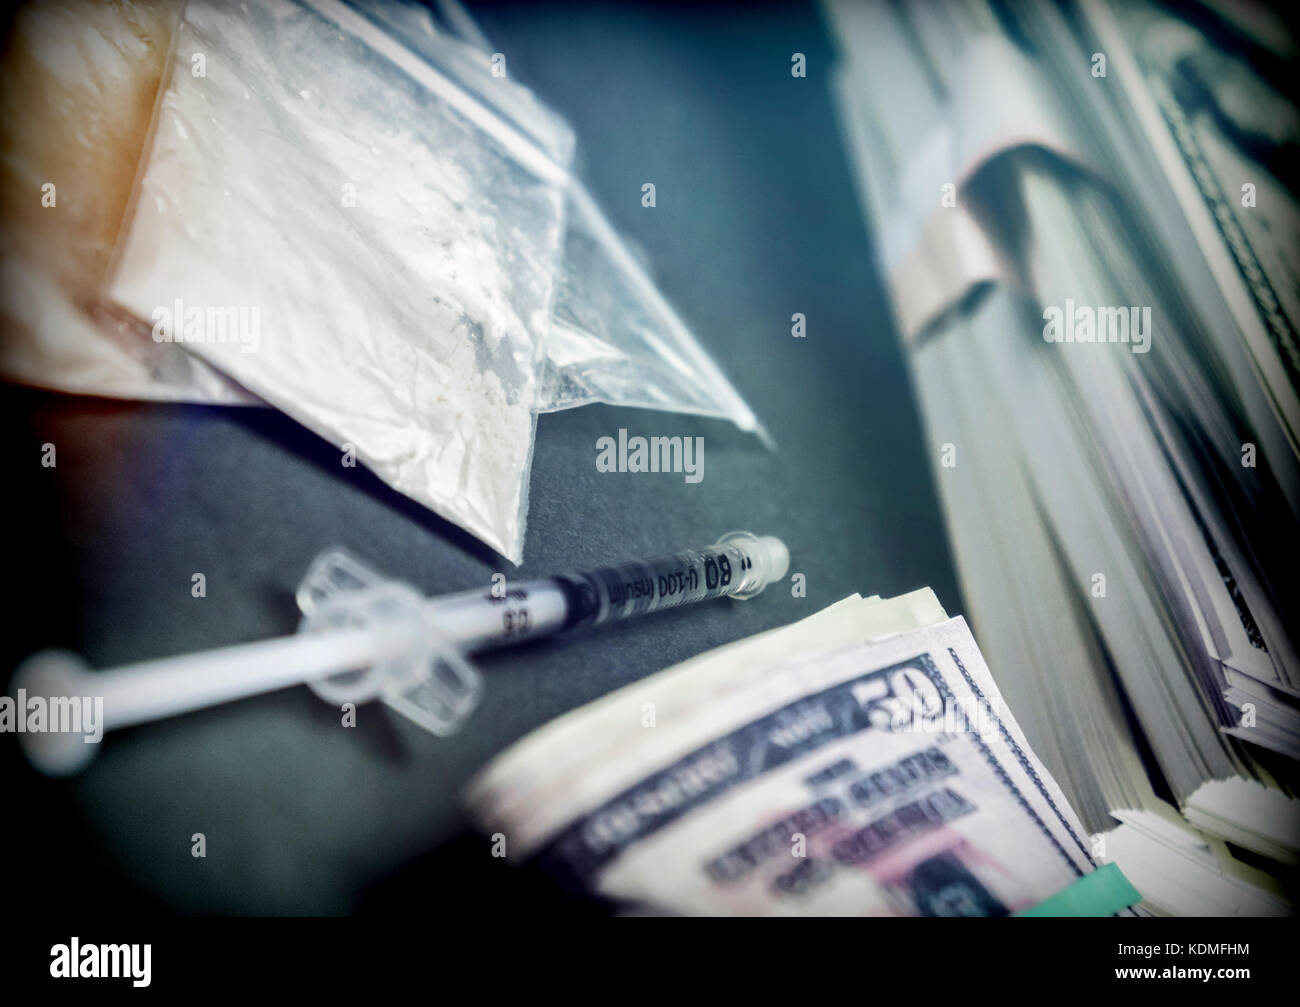 Sacchetto di droga lungo con alcune fatture del dollaro, immagine concettuale Foto Stock